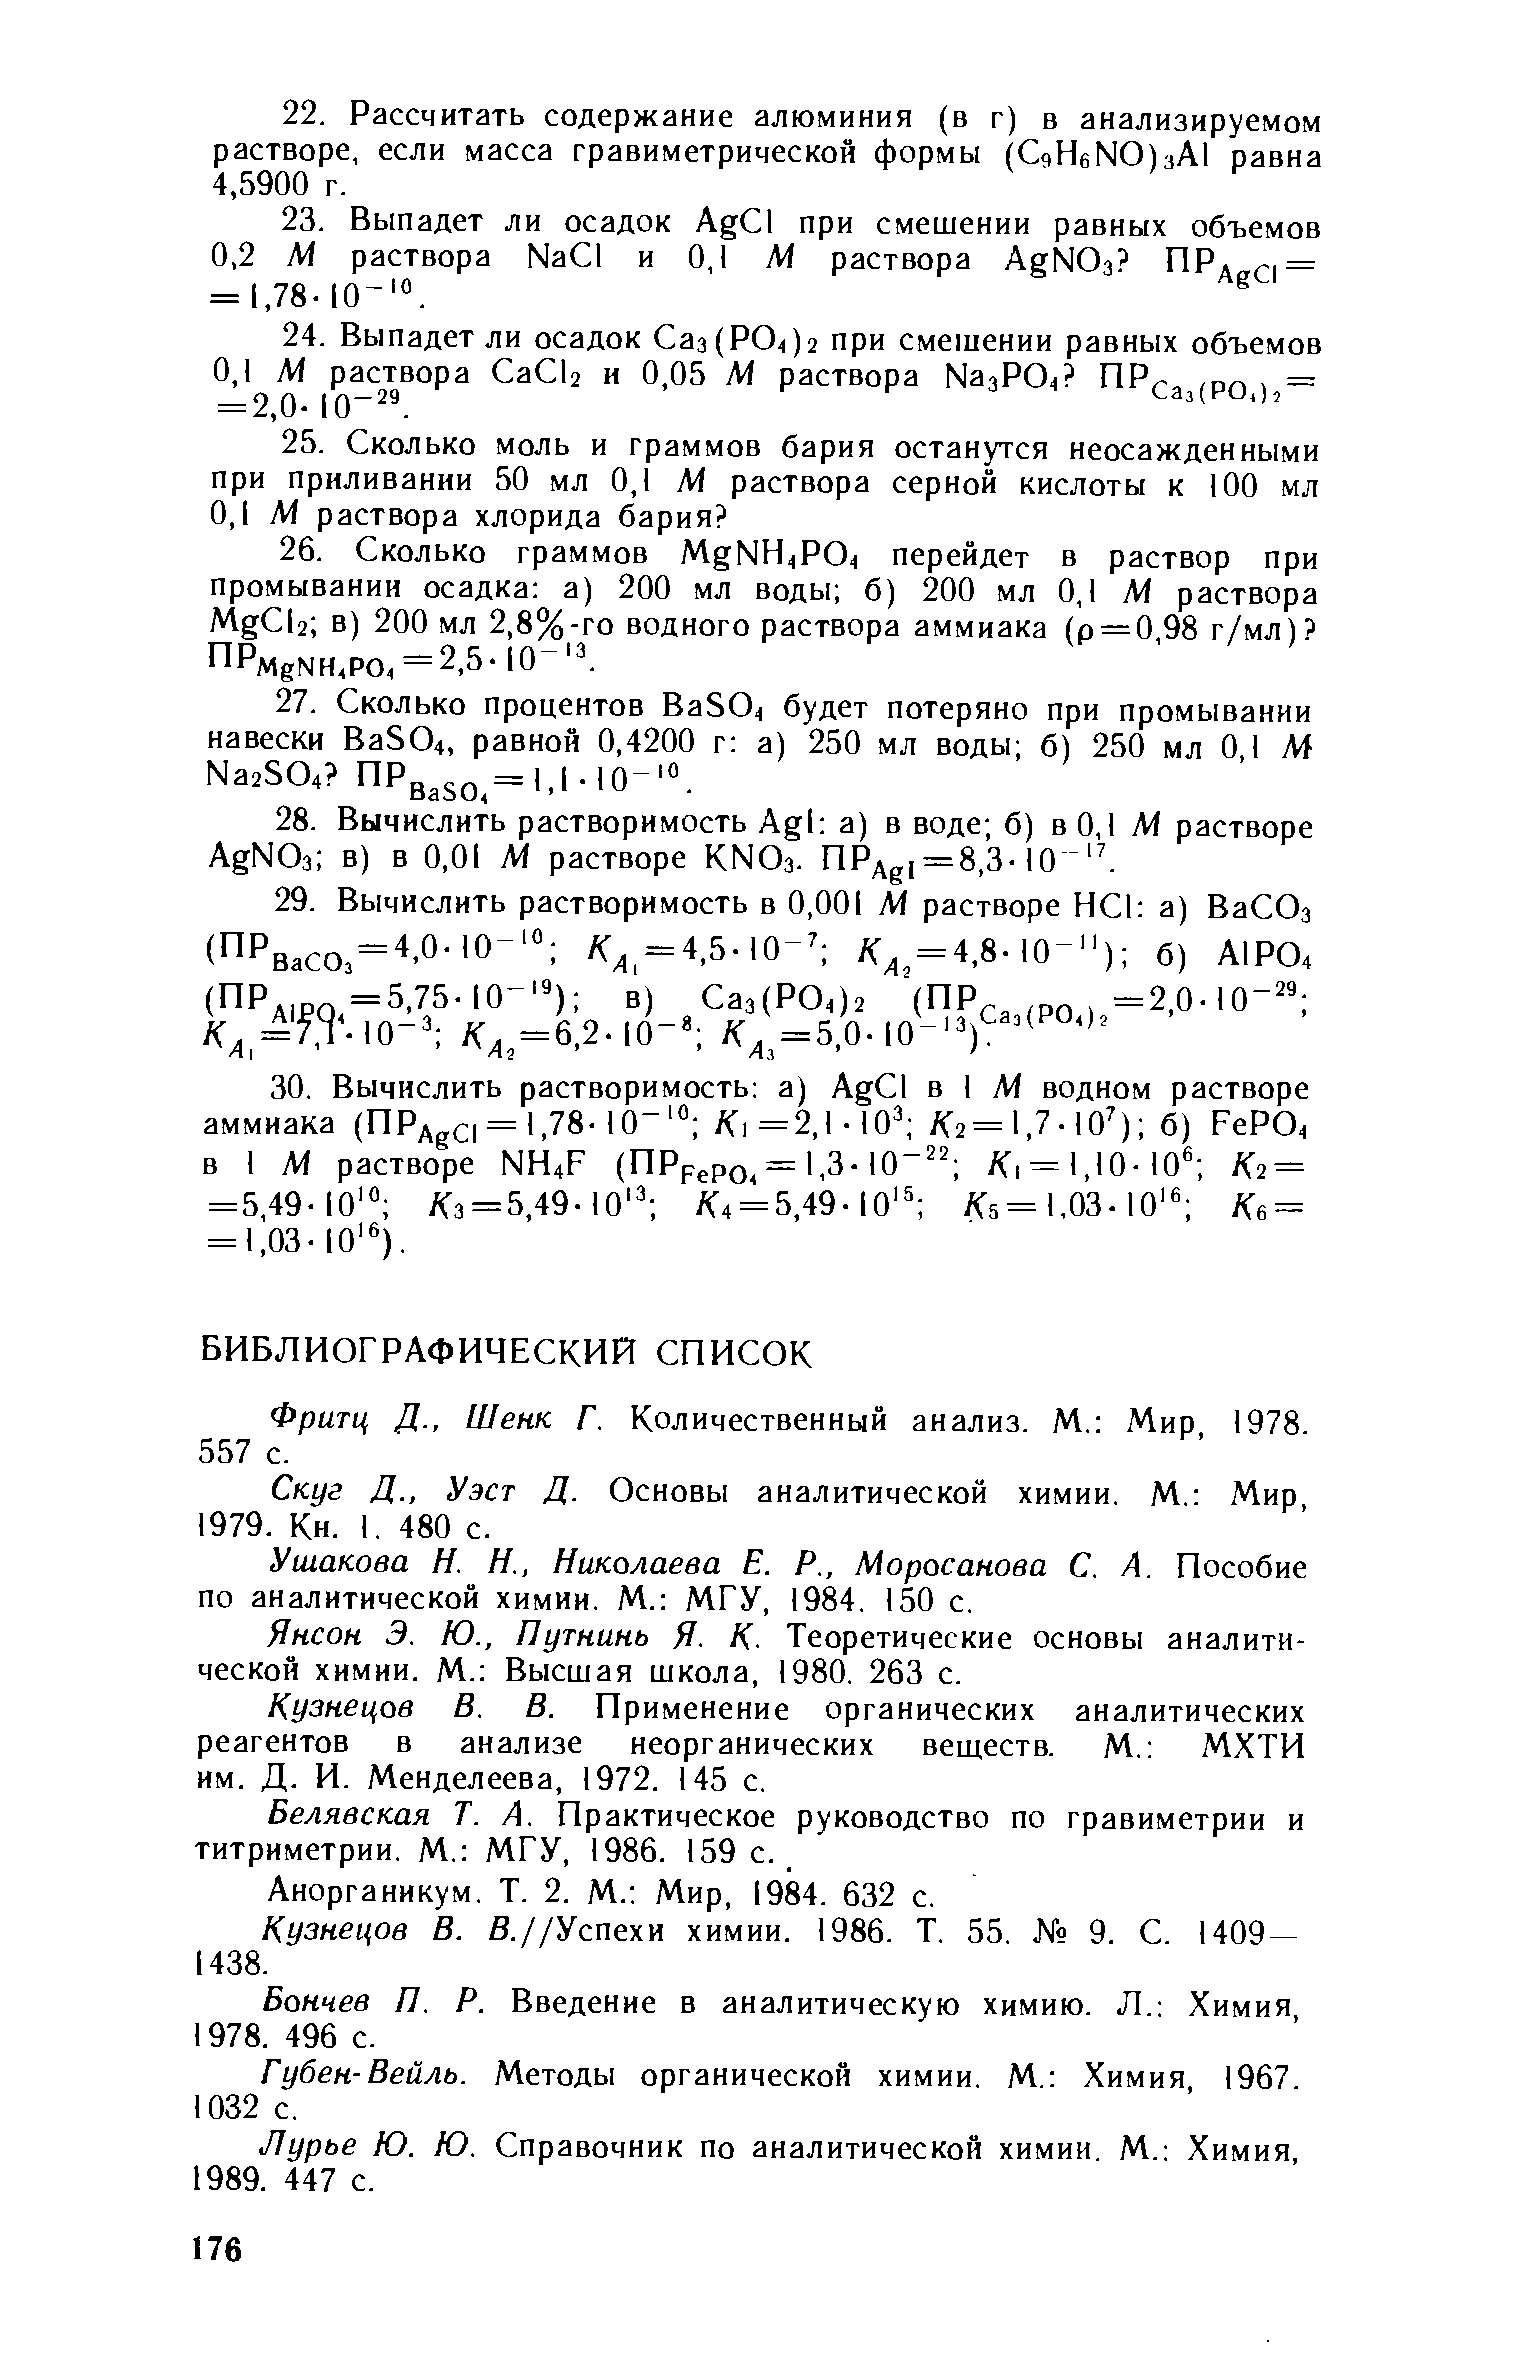 Фритц д., Шенк Г. Количественный анализ. М. Мир, 1978. 557 с.